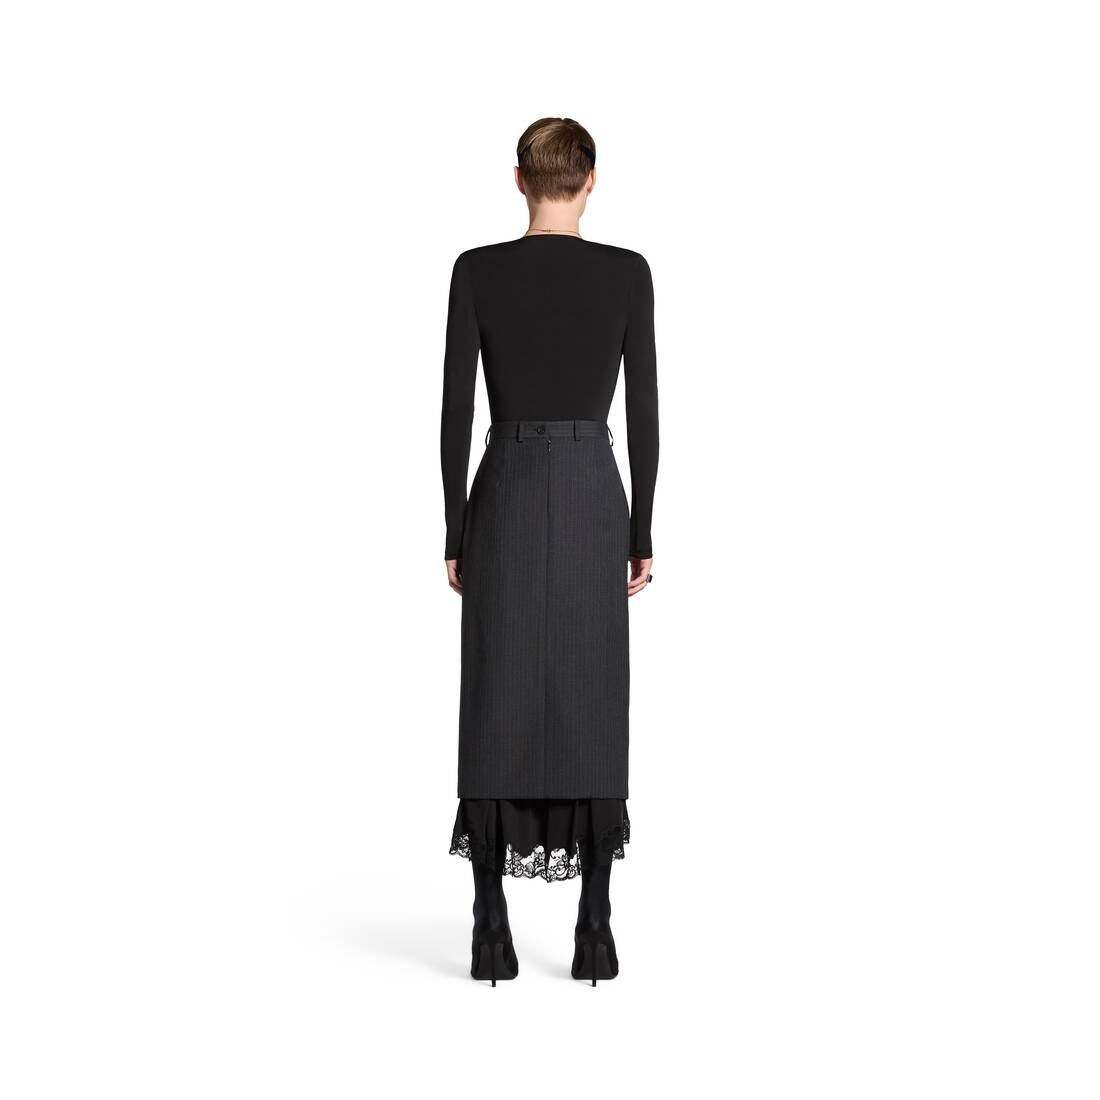 Women's Lingerie Tailored Skirt in Dark Grey - 4